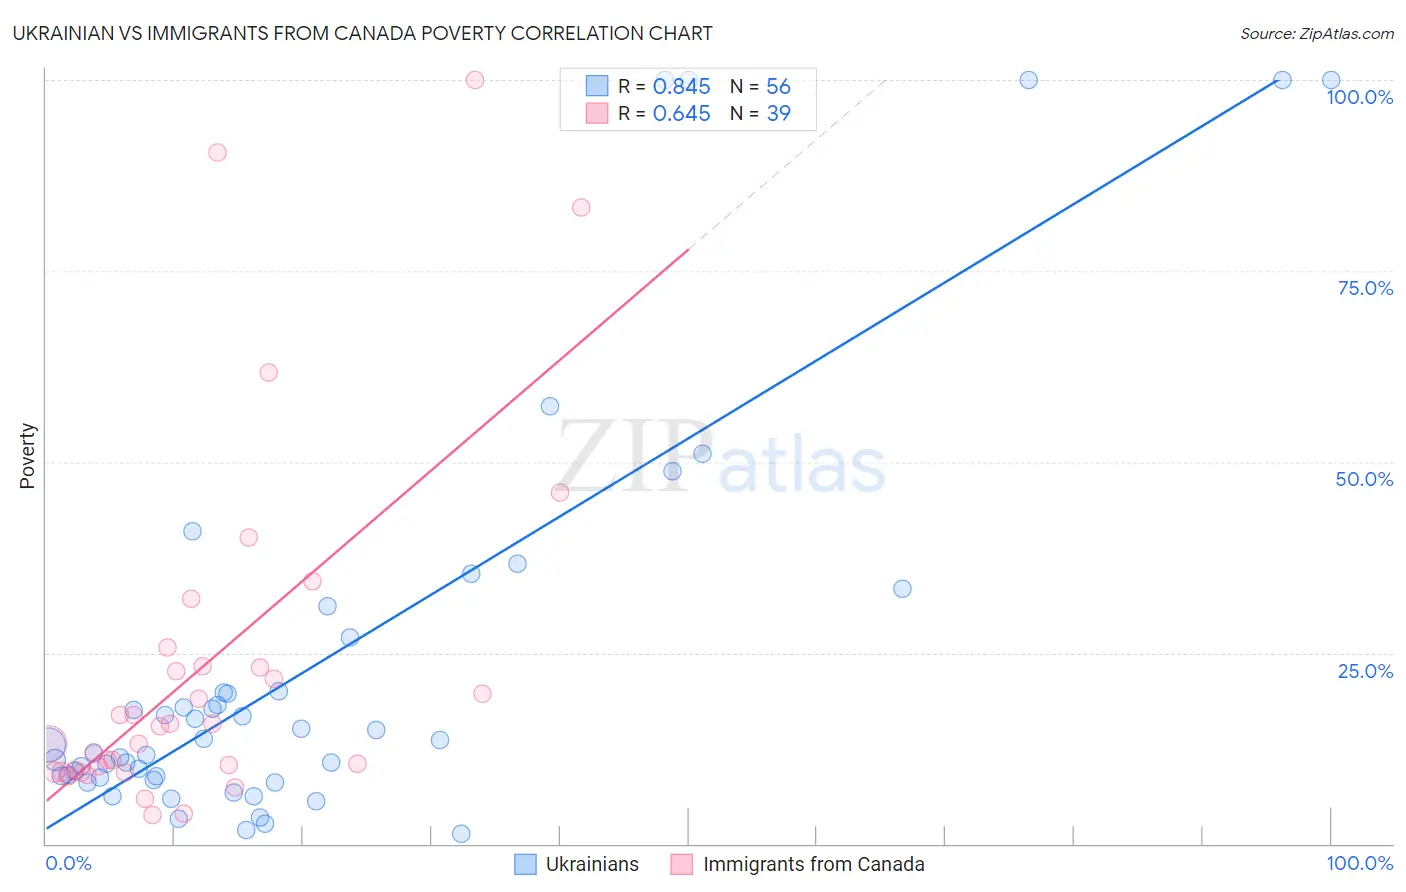 Ukrainian vs Immigrants from Canada Poverty